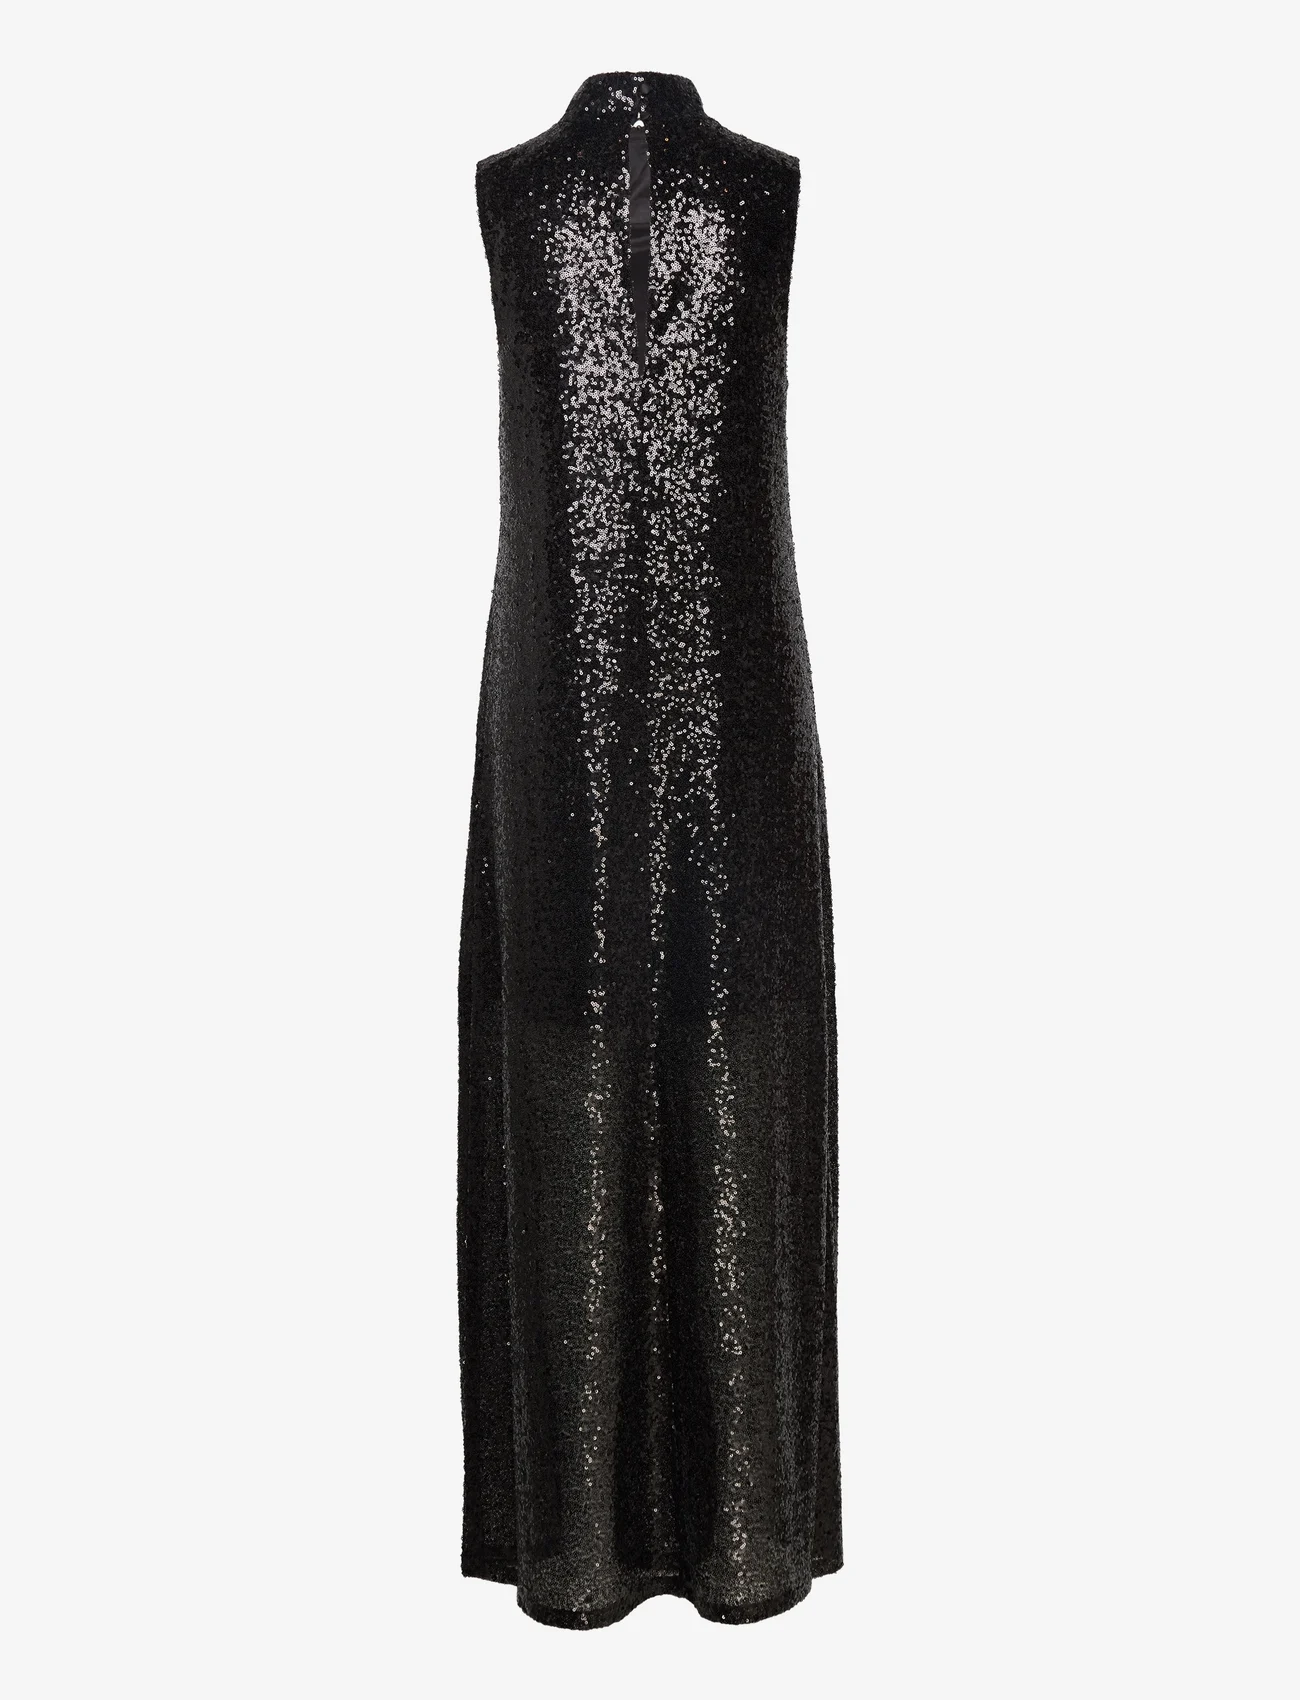 Filippa K - Aspen Sequin Dress - odzież imprezowa w cenach outletowych - ash grey - 1